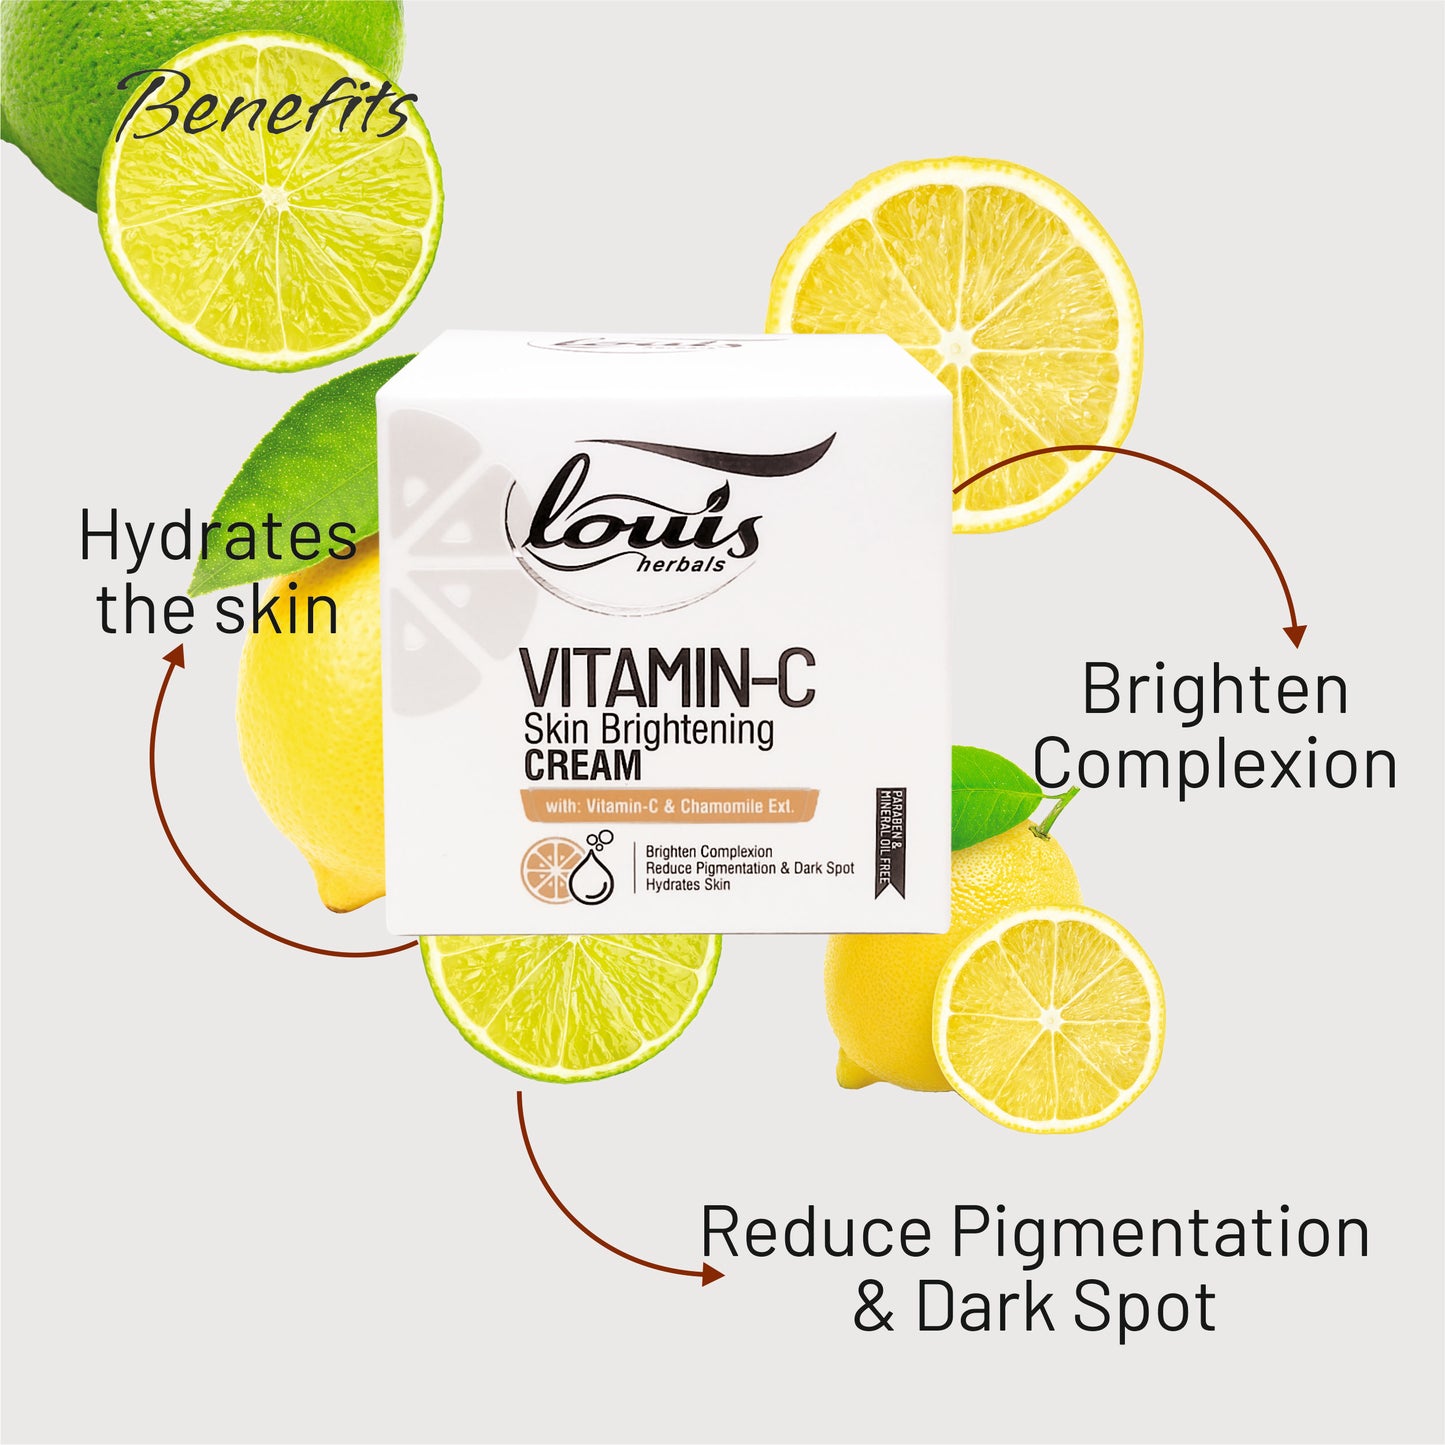 Vitamin-c Skin Brightening Cream